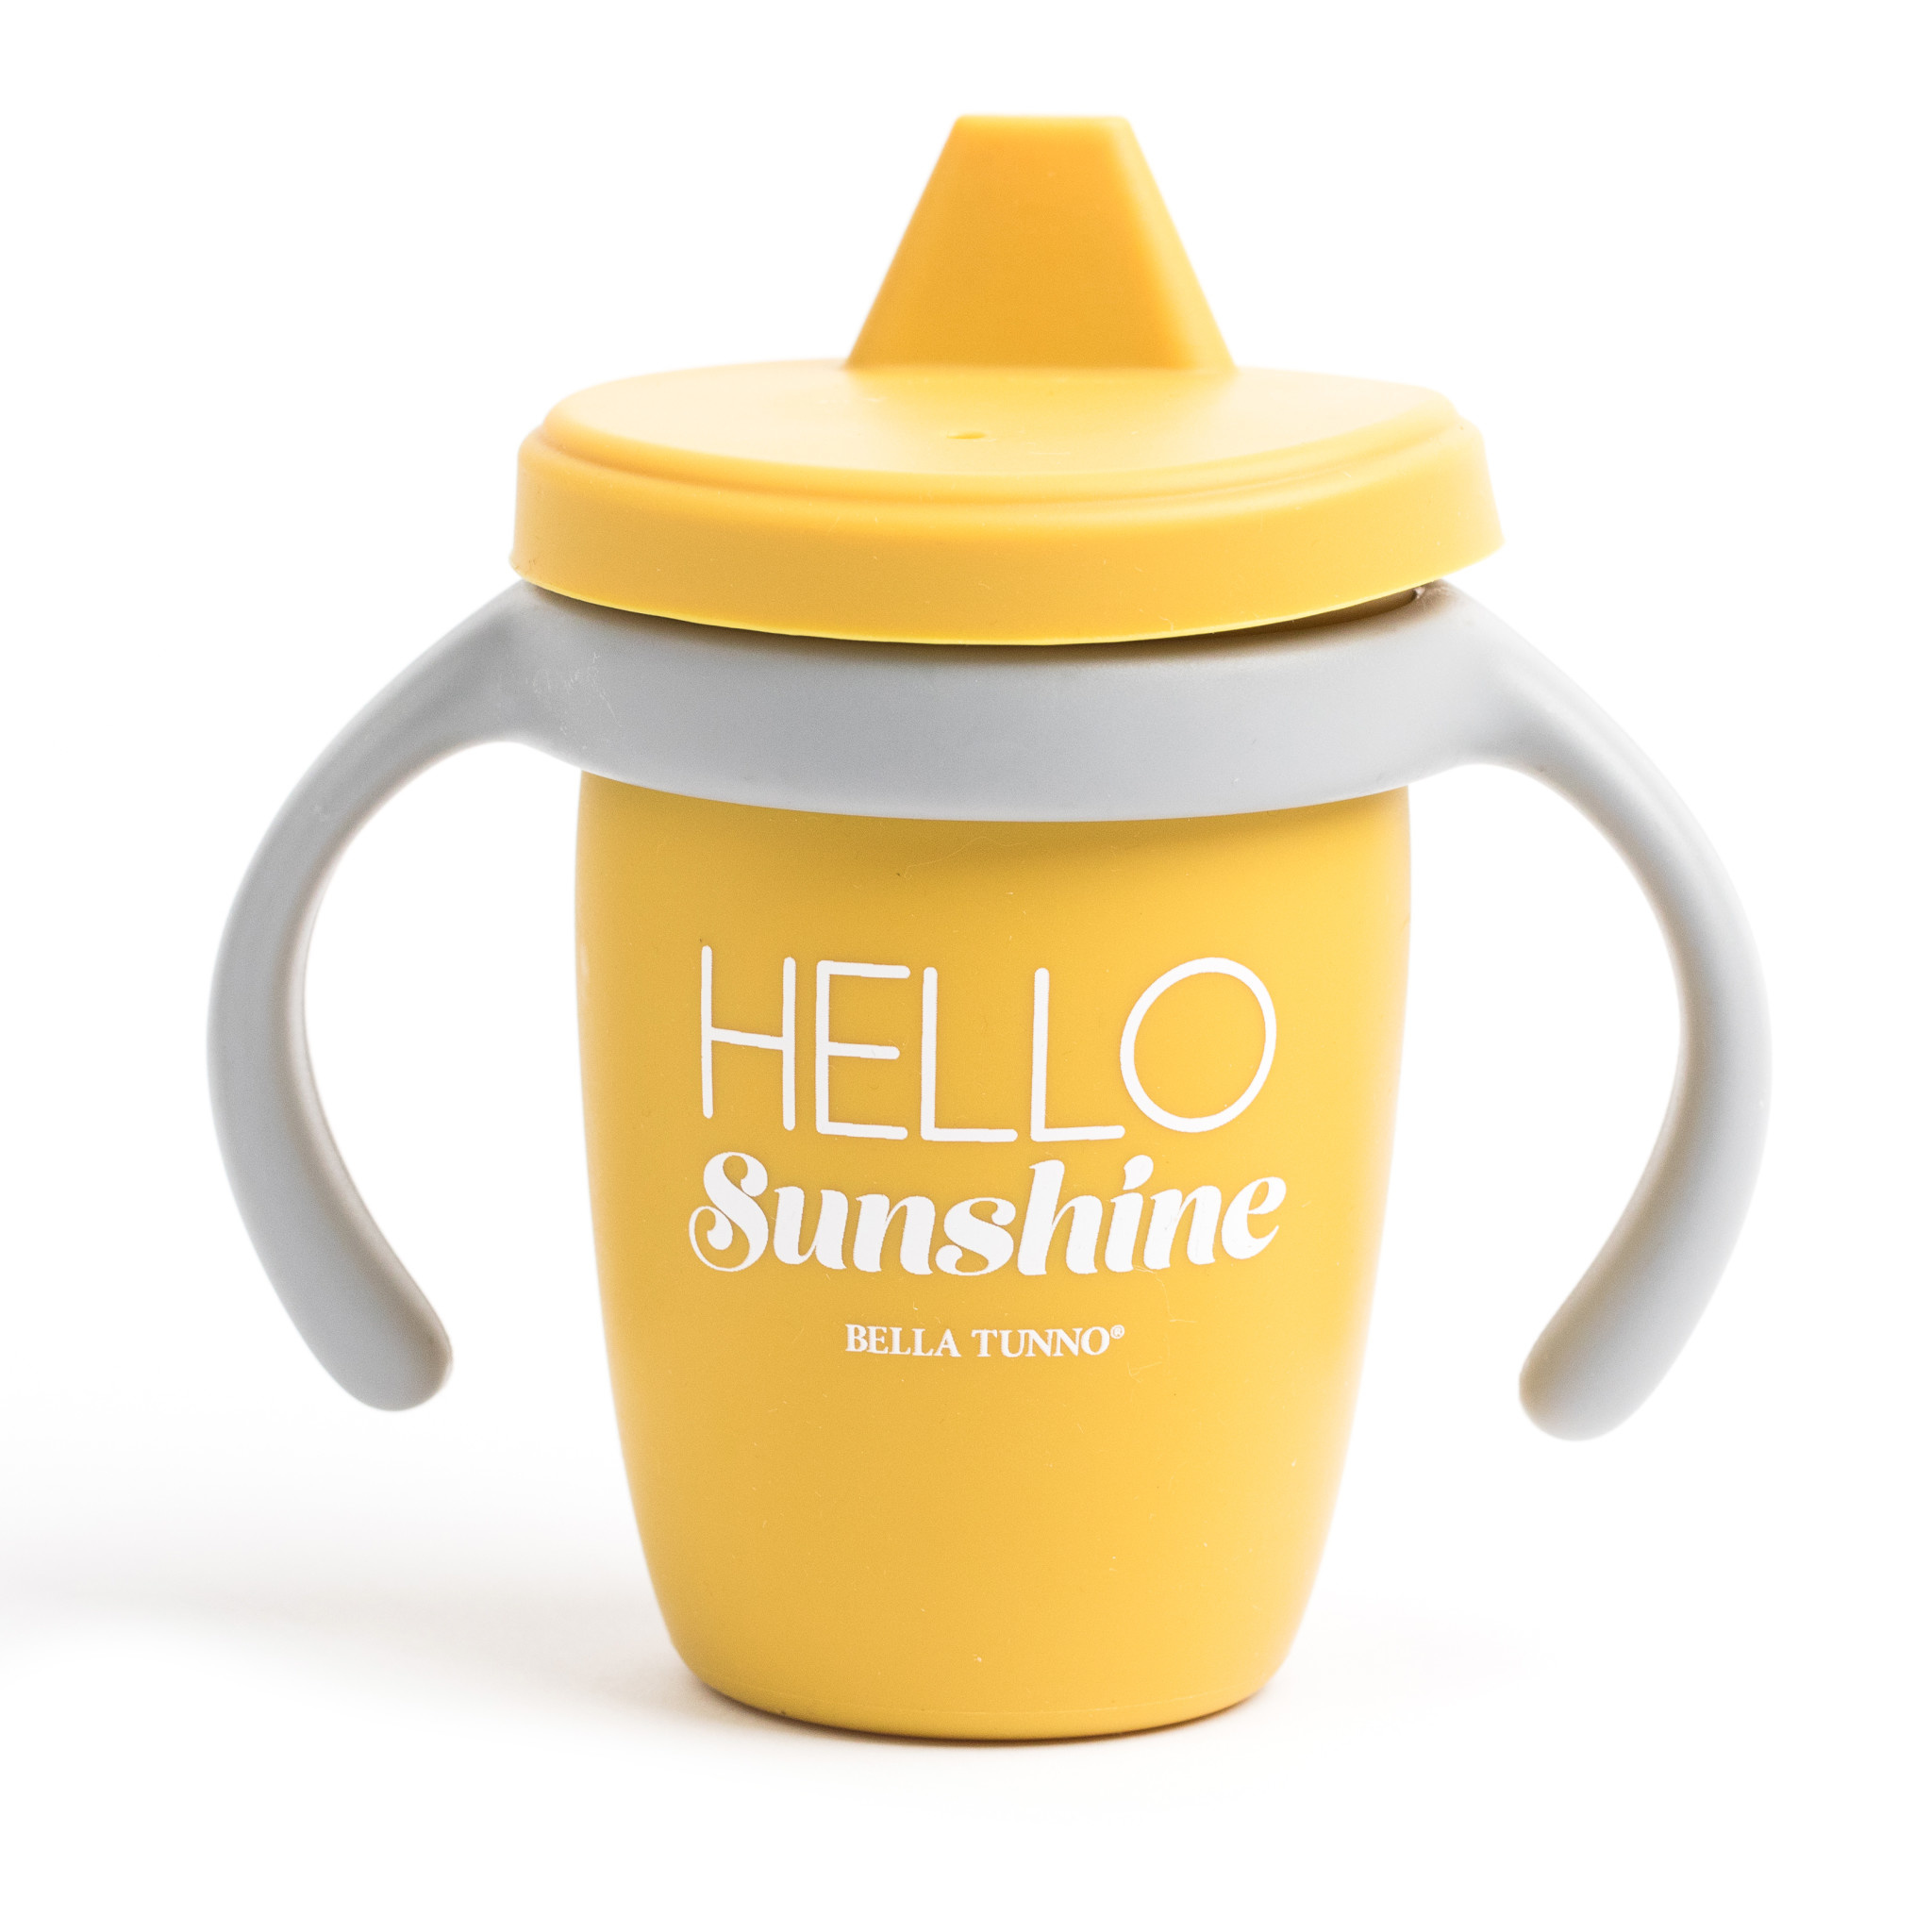 Bella Tunno Sippy Cup - Hello Sunshine